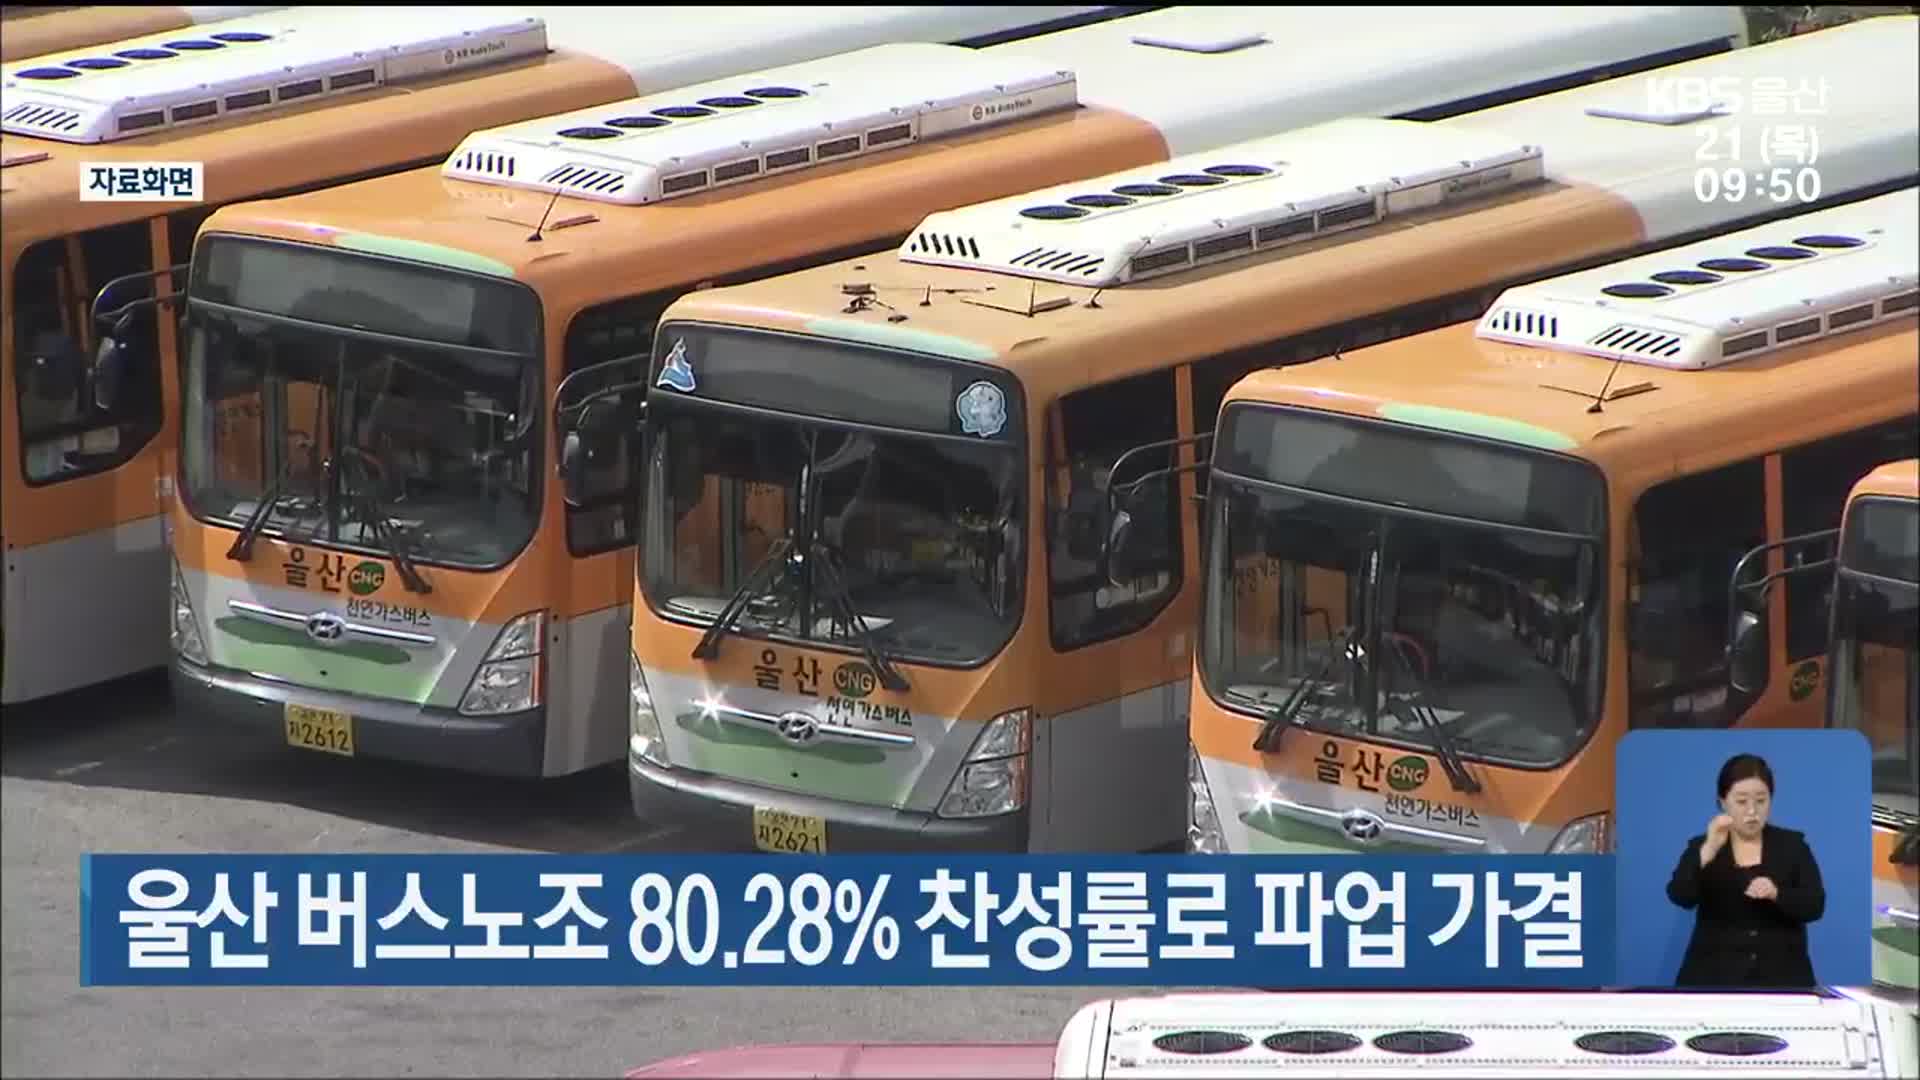 울산 버스노조 80.28% 찬성률로 파업 가결